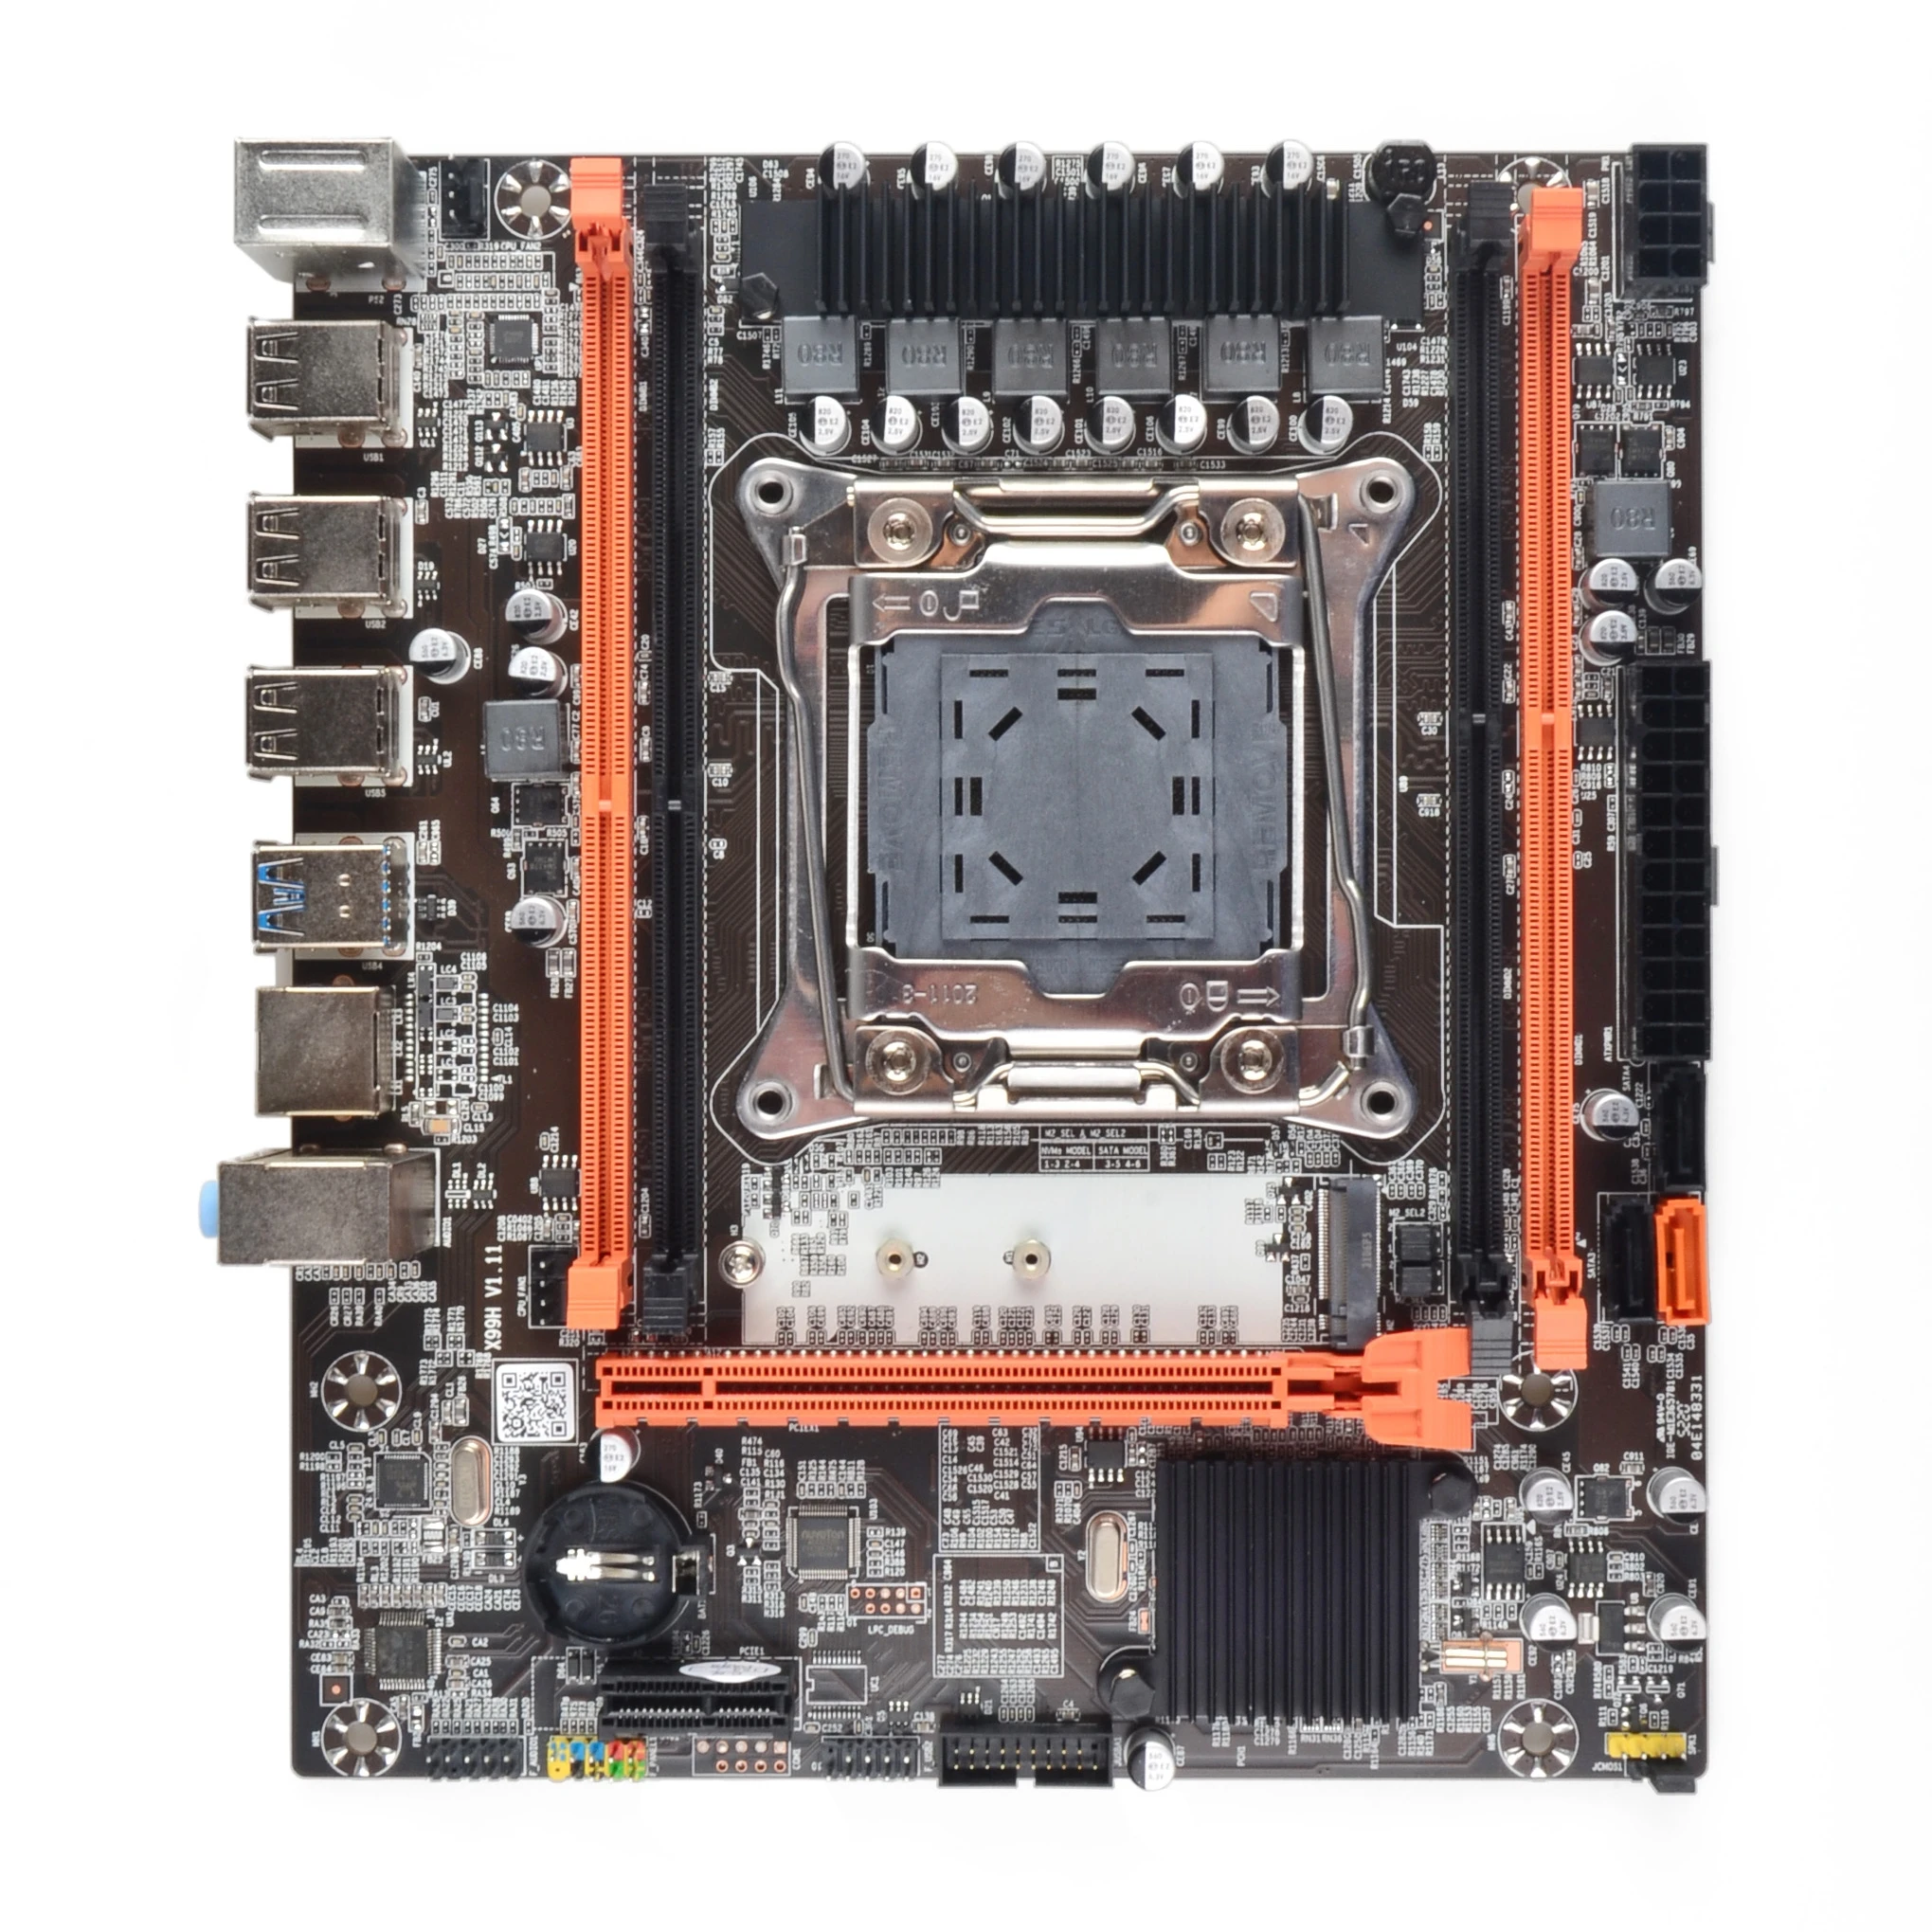 Комплект настольных компьютеров xeon X99 материнская плата комбинированная LGA 2011-3 E5 2620 V3 процессор 16G = 2*8G 2400 МГц набор памяти DDR4 . ' - ' . 1